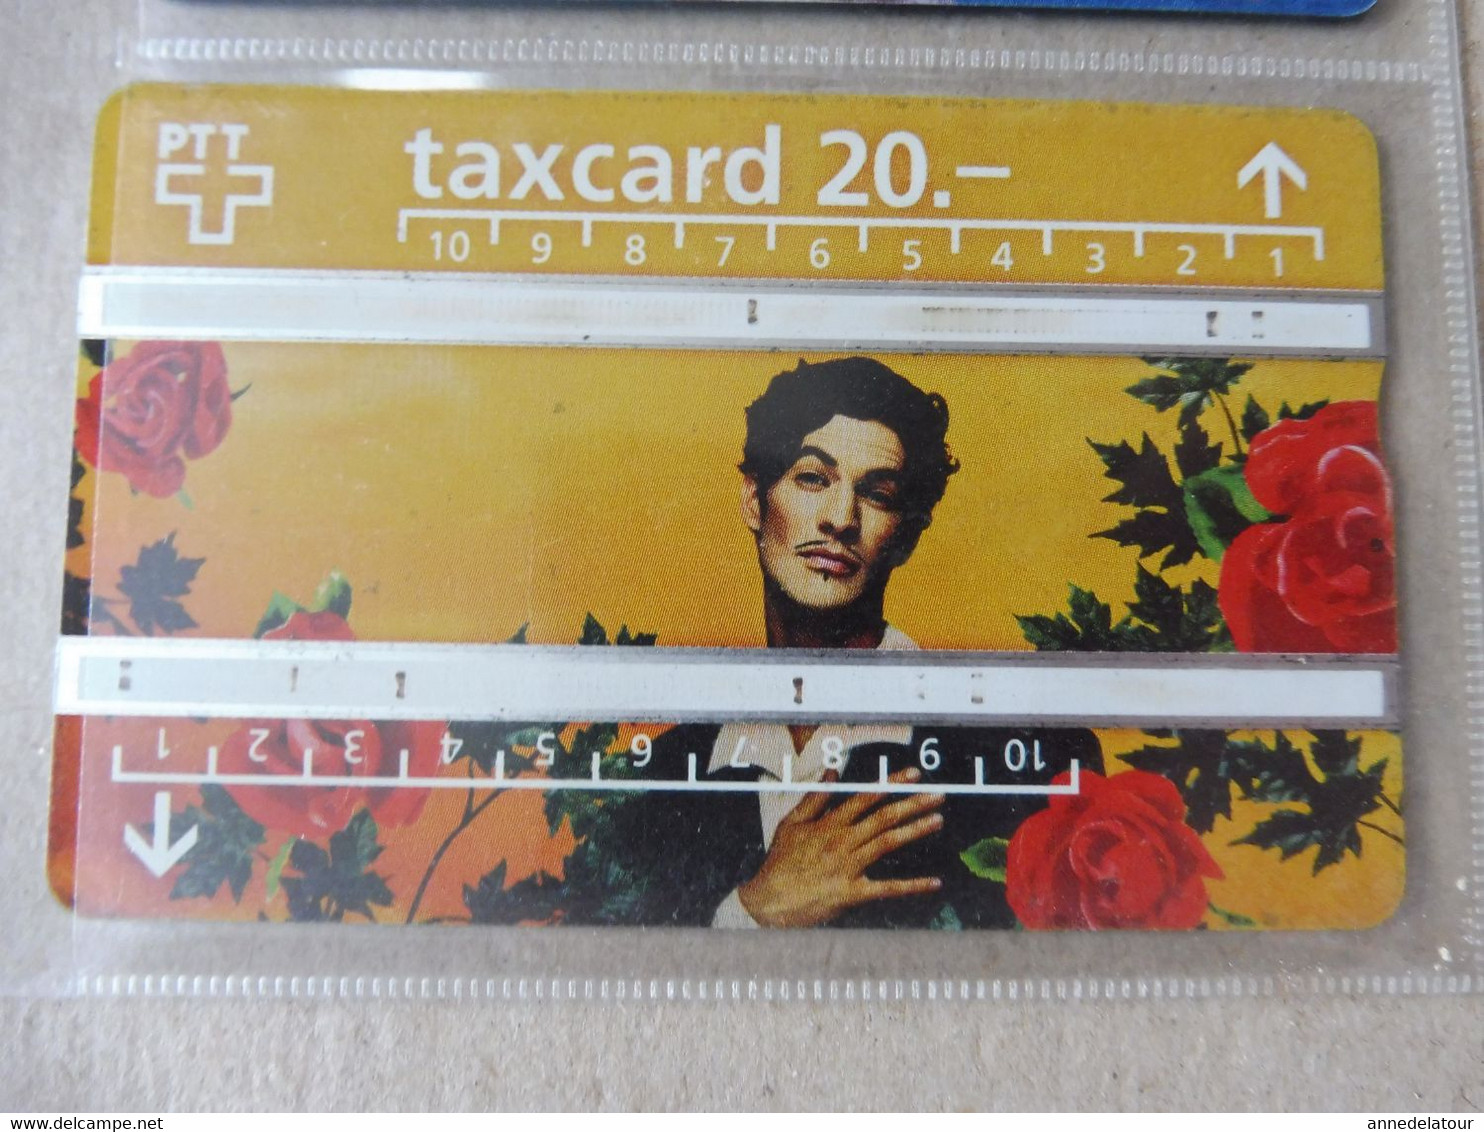 10 télécartes (cartes téléphoniques)  TAXCARD  ,   origine Suisse